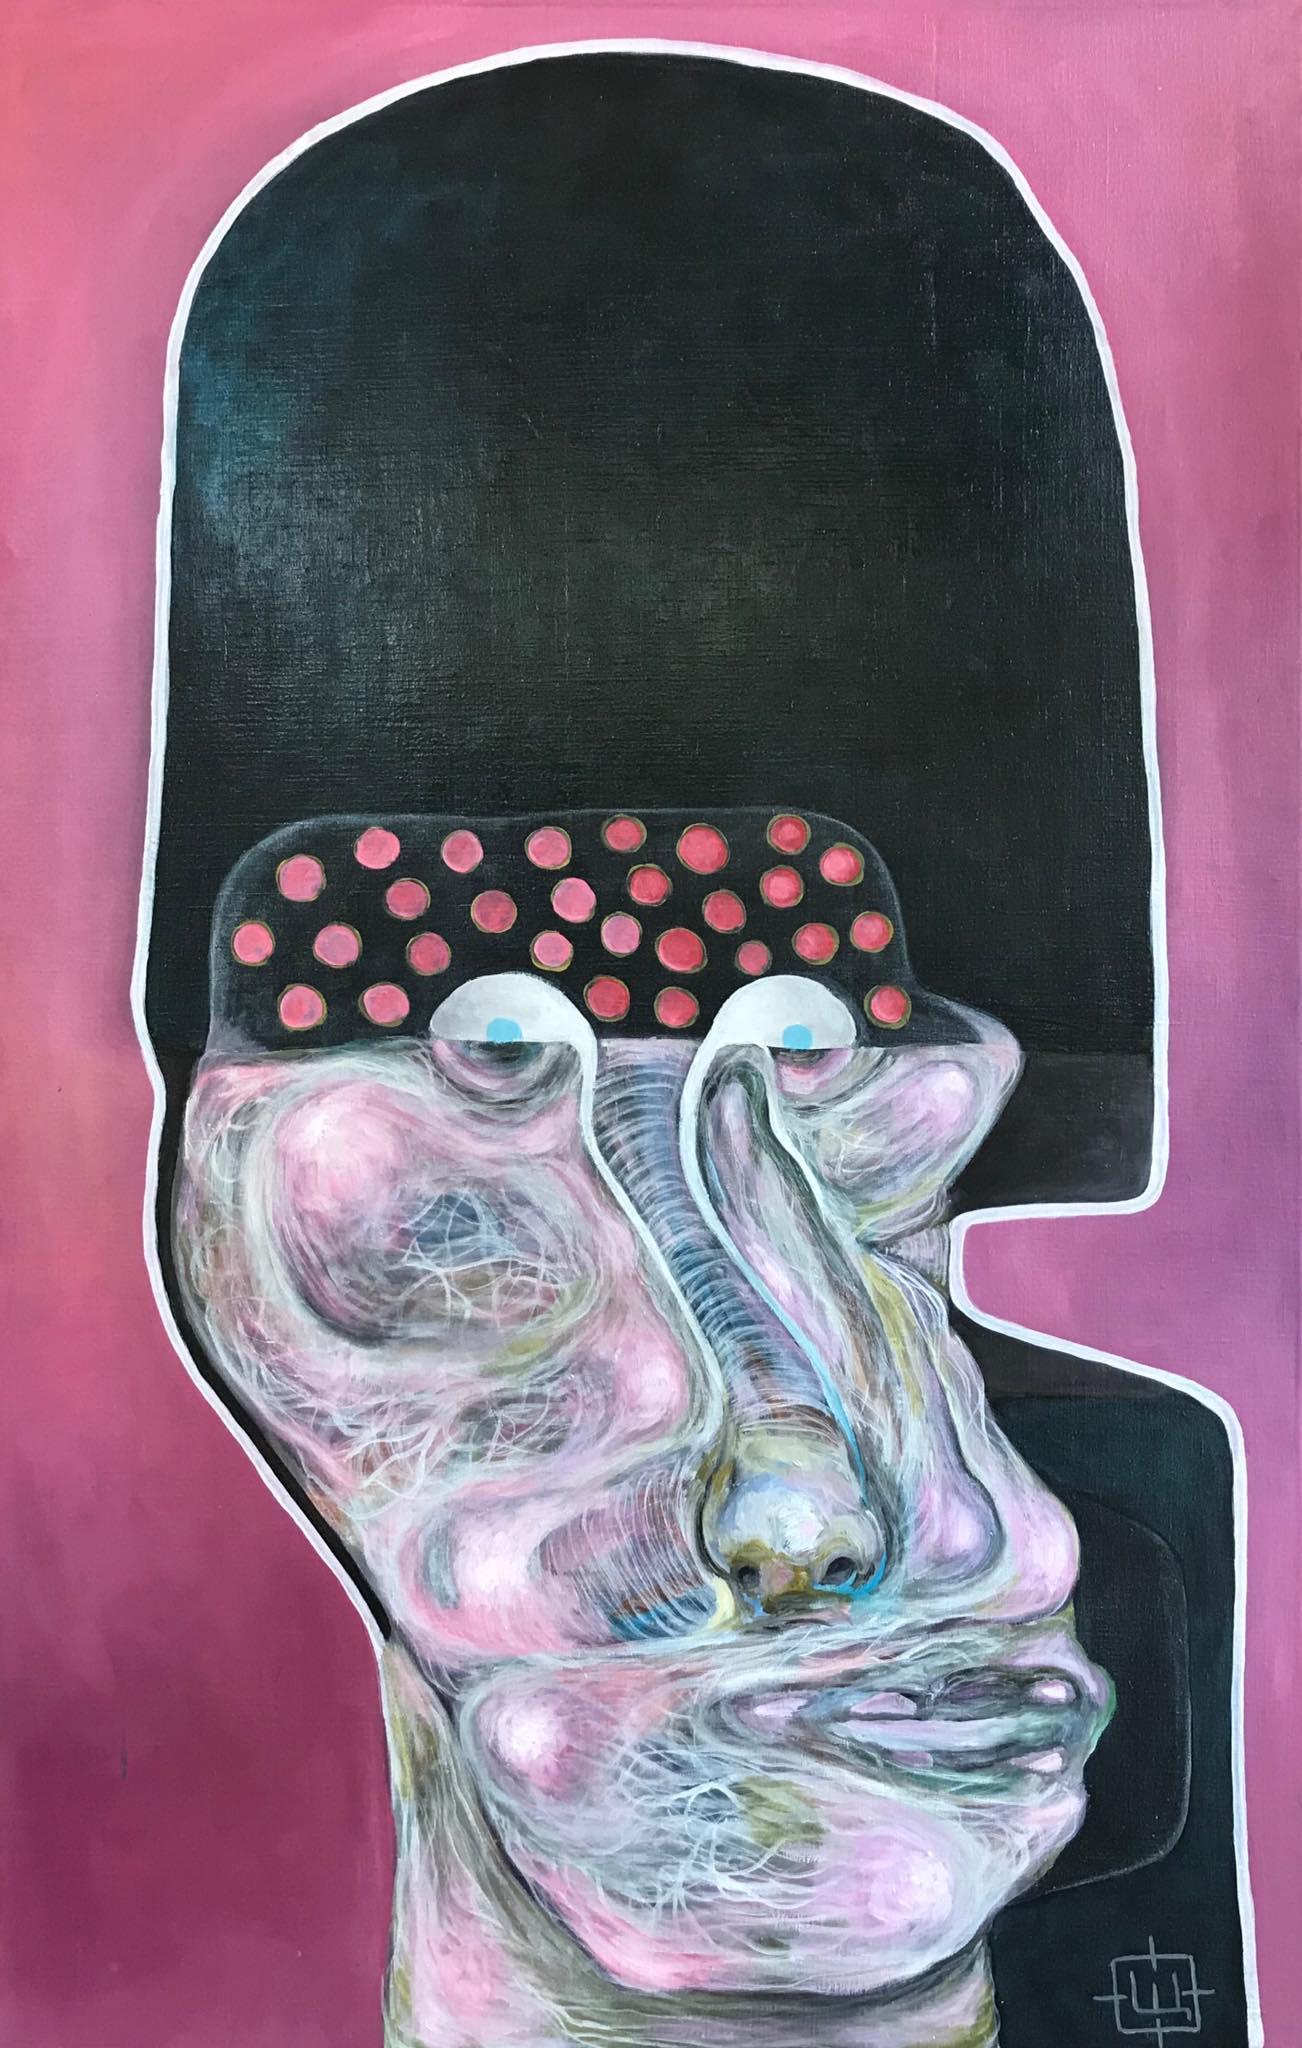 Luminous 30" von Sergey Morshch ist ein zeitgenössisches abstraktes Ölgemälde, das die Themen Identität, persönliches Wachstum und die Kraft der menschlichen Energie aufgreift. Wunderschönes rosafarbenes surrealistisches Porträt für eine persönliche